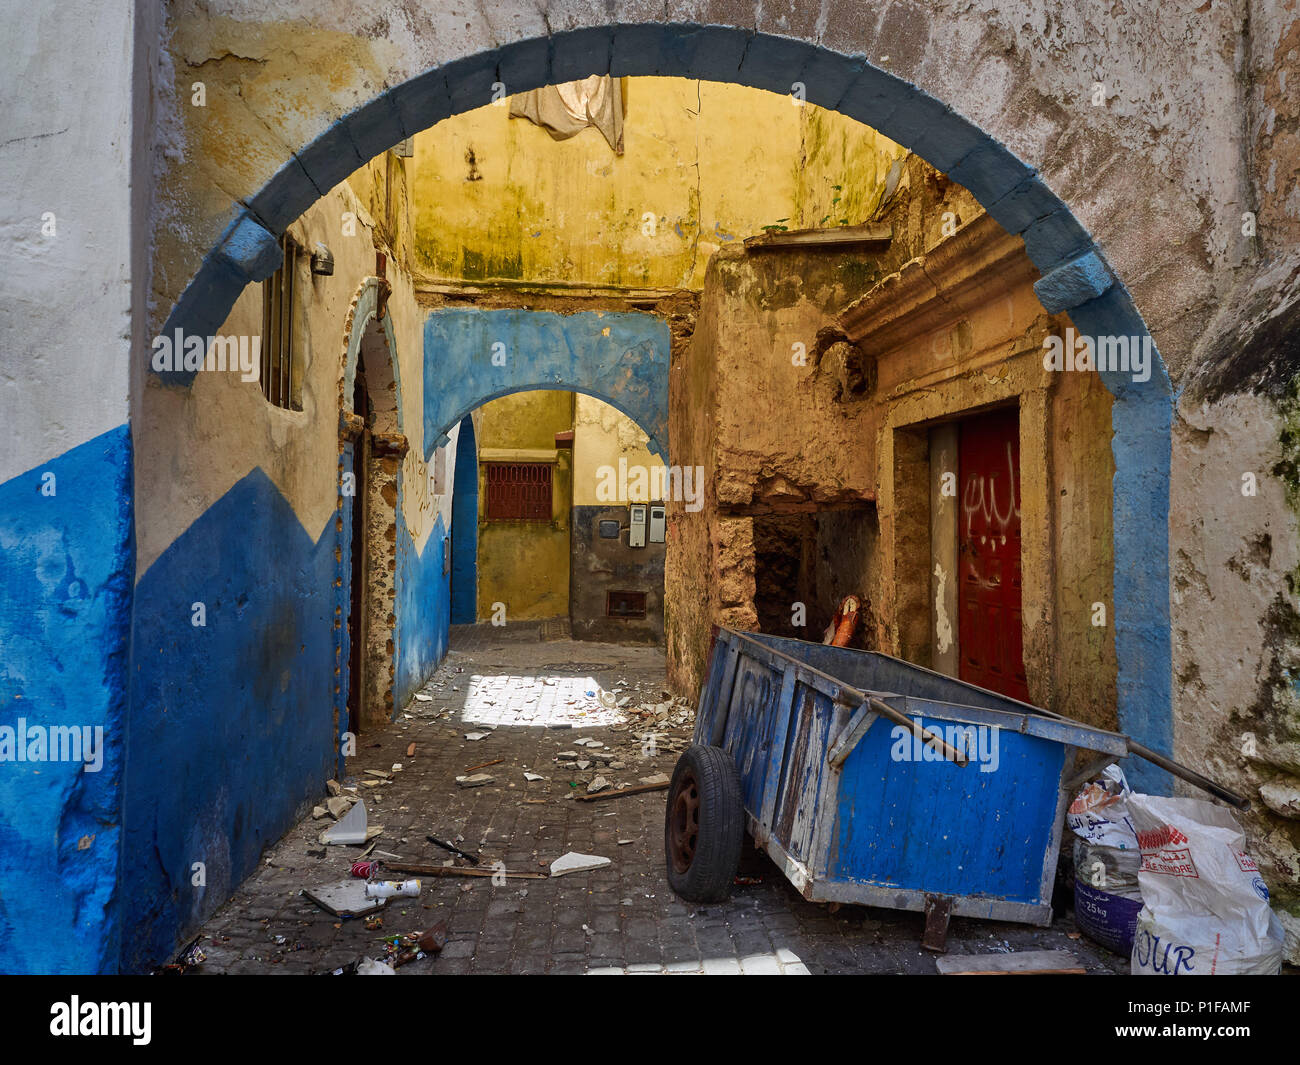 Grunge fond urbain avec des murs bleus et jaunes et des arches de maisons du portugais medina El Jadida, Maroc. Banque D'Images